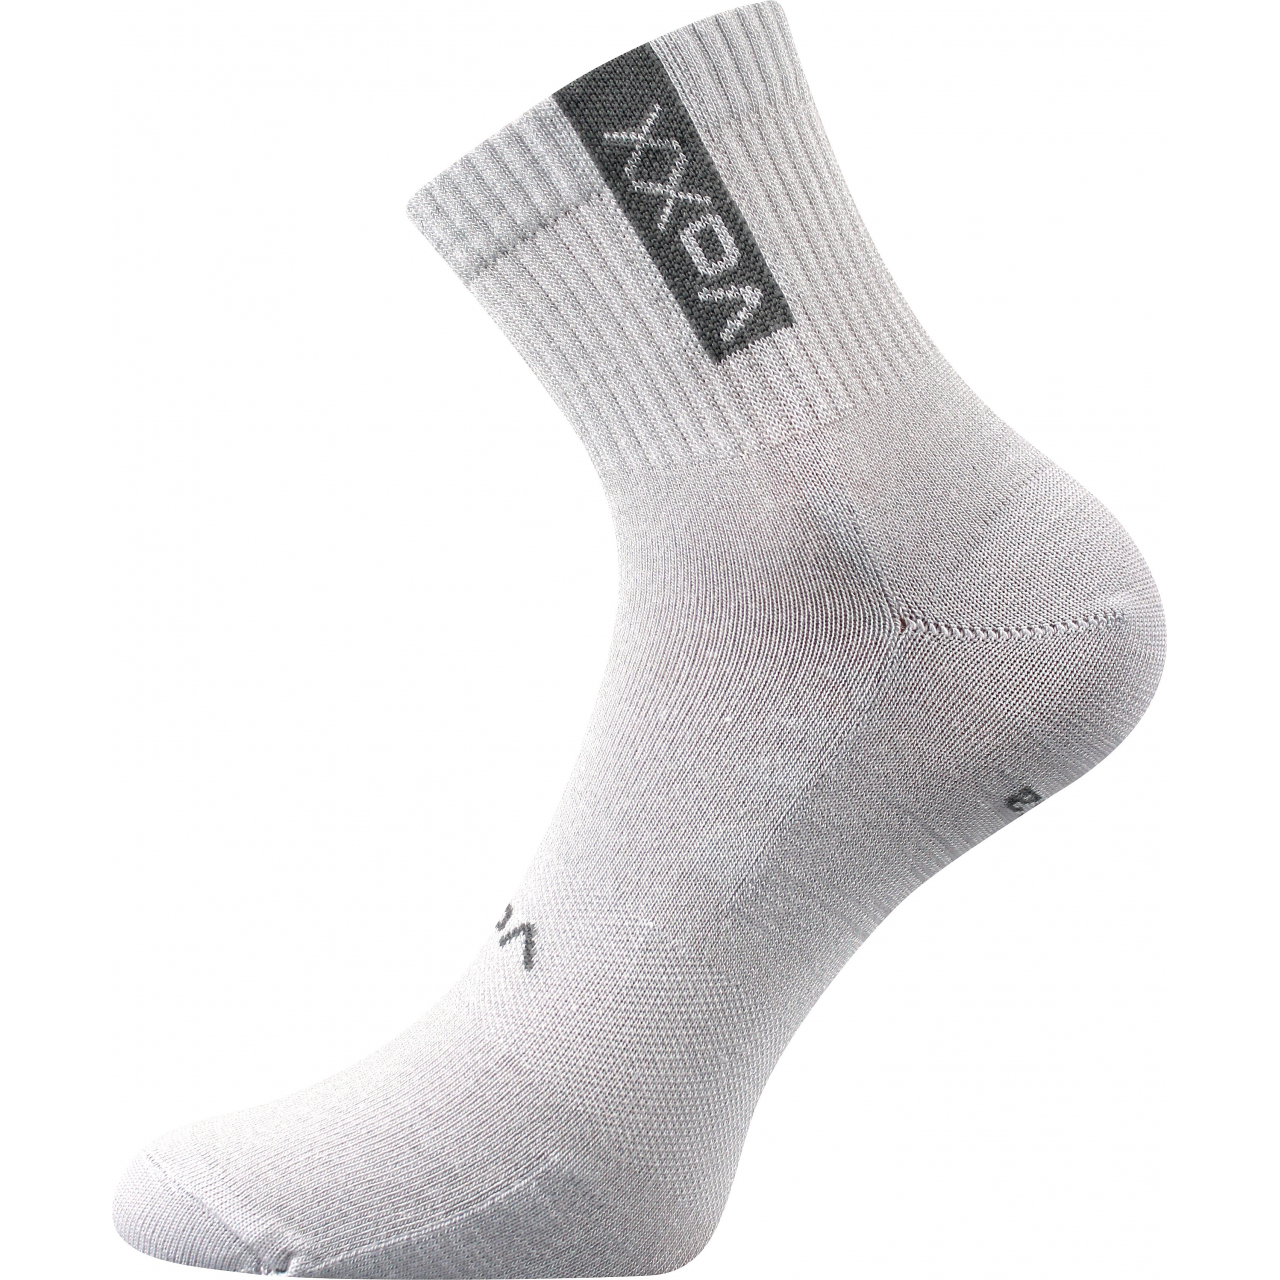 Ponožky sportovní unisex Voxx Brox - světle šedé, 43-46